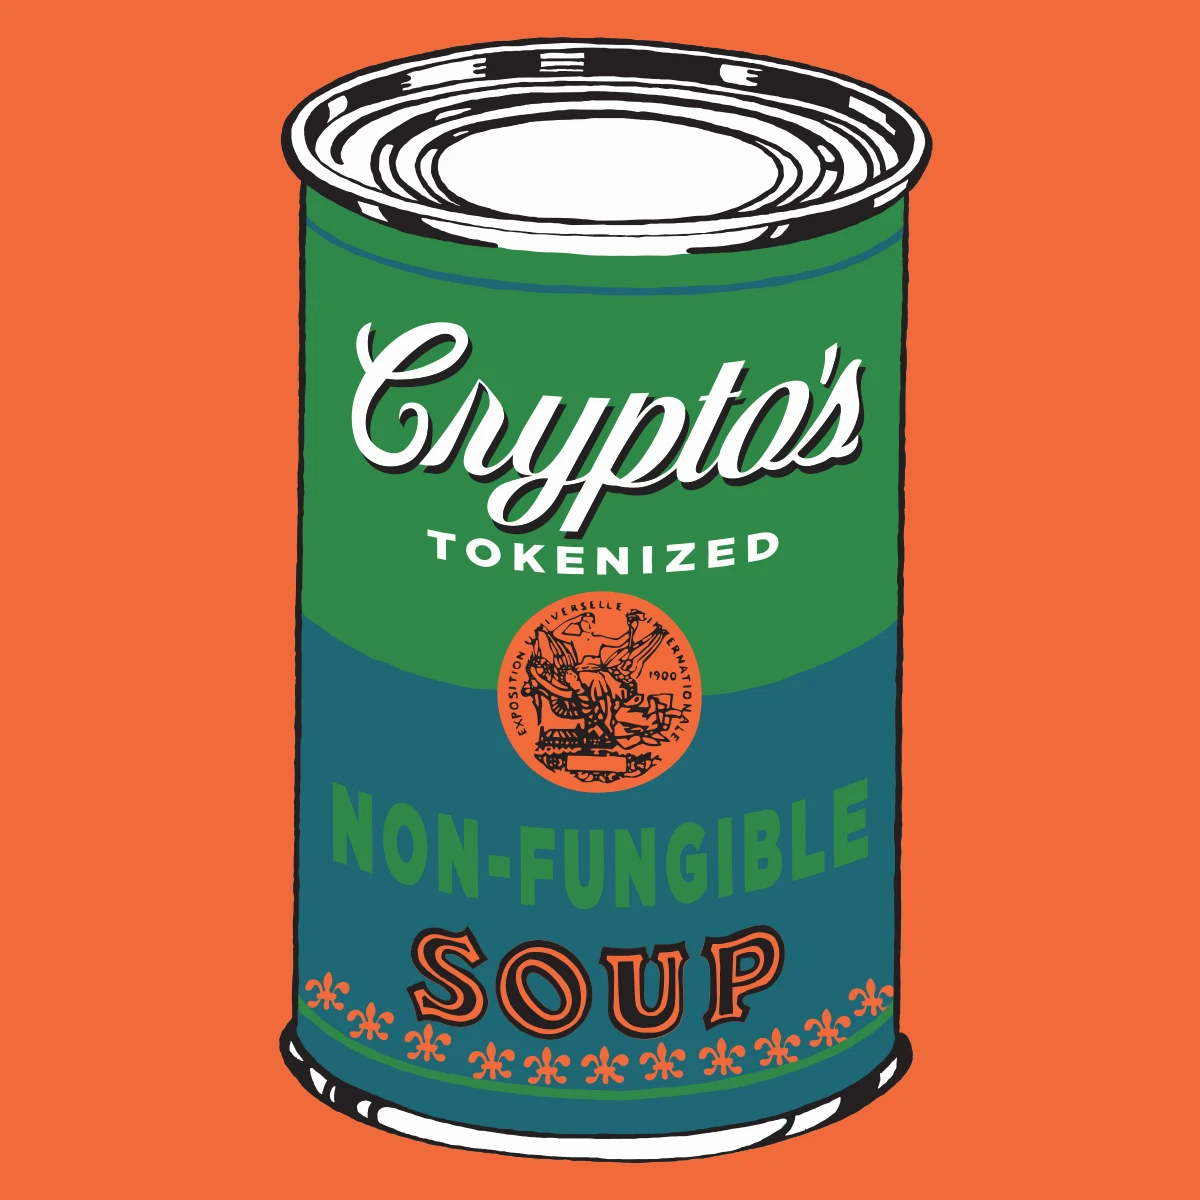 Non-Fungible Soup #1837